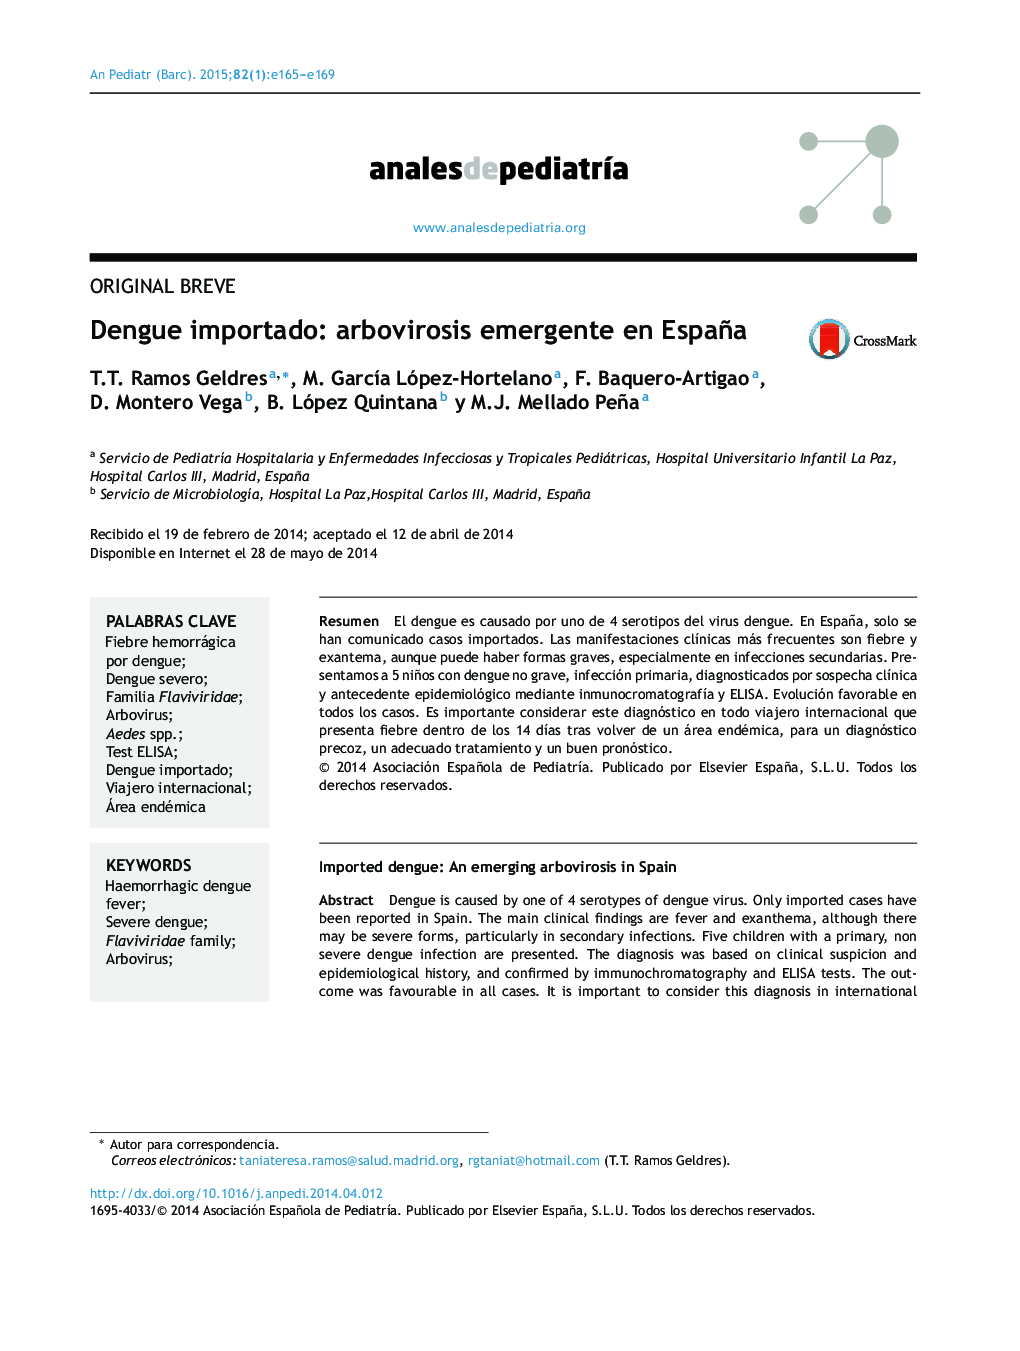 Dengue importado: arbovirosis emergente en España